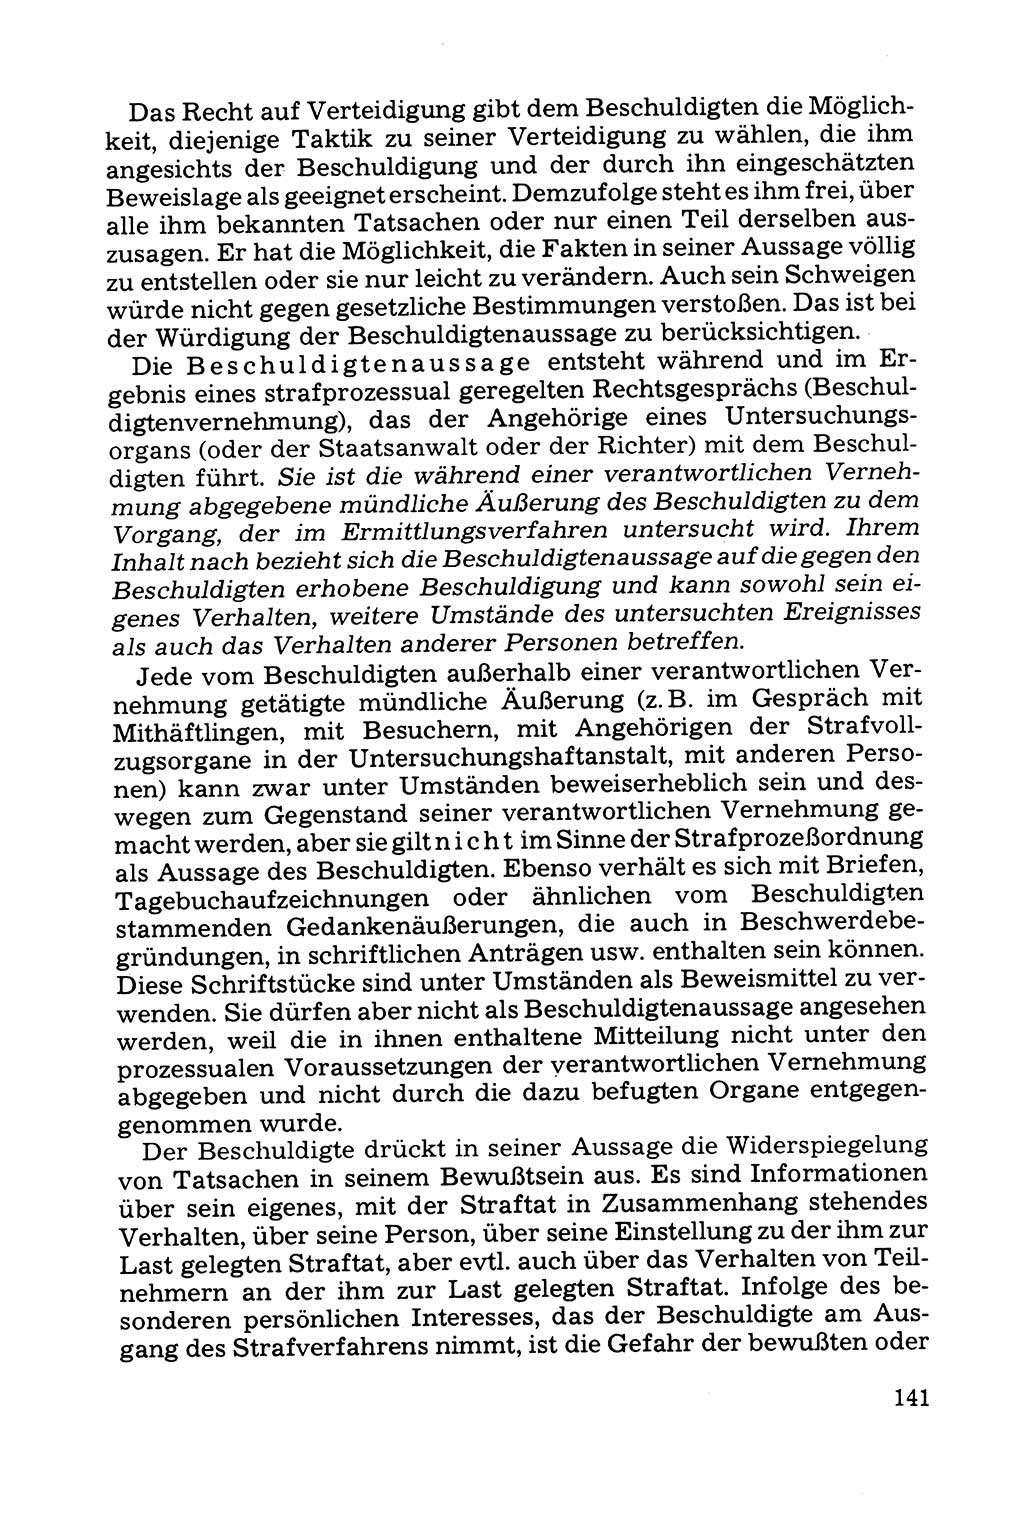 Grundfragen der Beweisführung im Ermittlungsverfahren [Deutsche Demokratische Republik (DDR)] 1980, Seite 141 (Bws.-Fhrg. EV DDR 1980, S. 141)